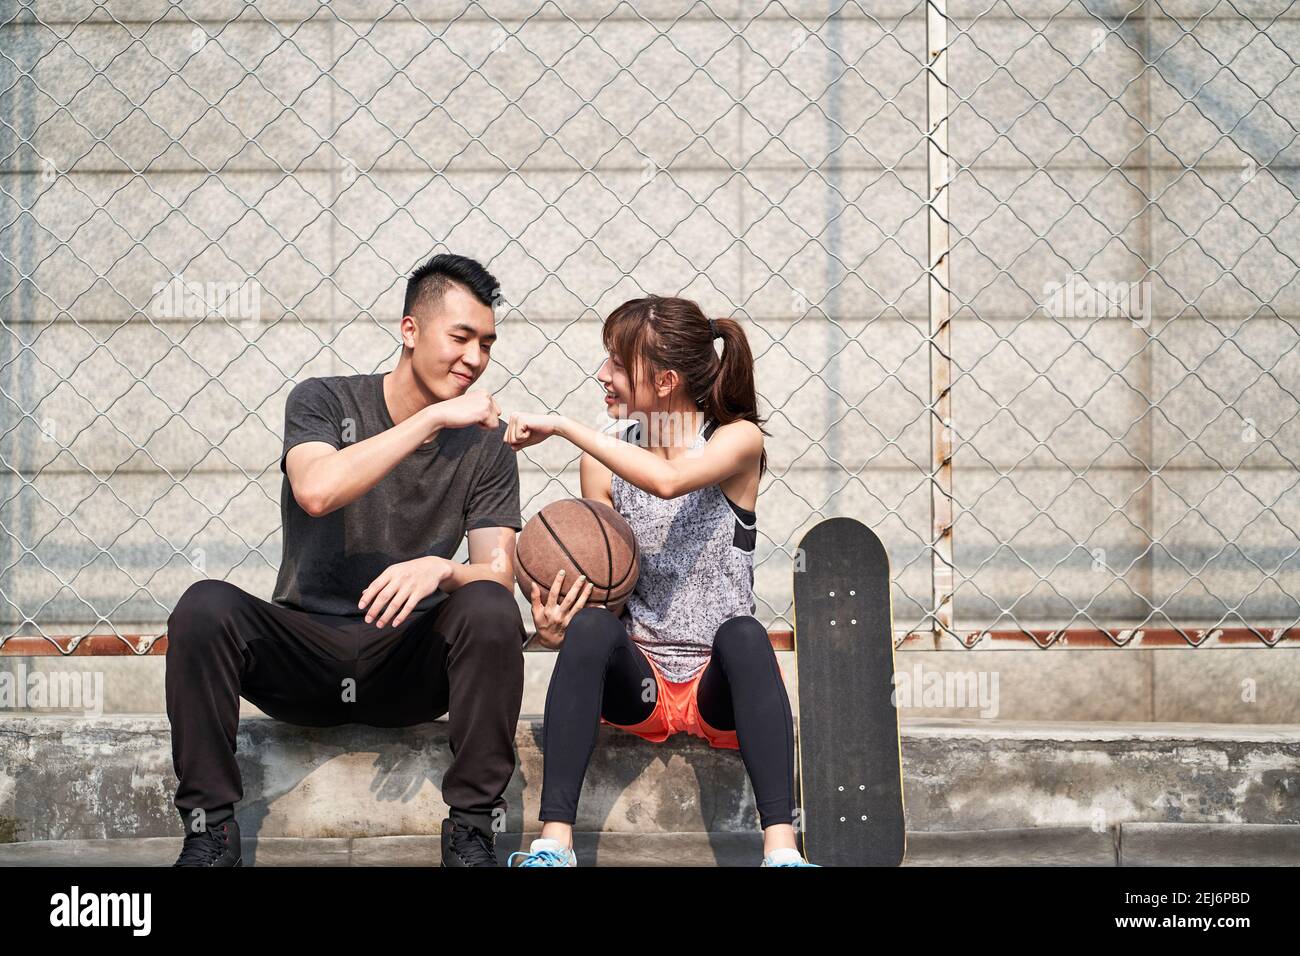 Junge asiatische Erwachsene Mann und Frau stoßen Fäuste auf einem Outdoor-Basketballplatz Stockfoto